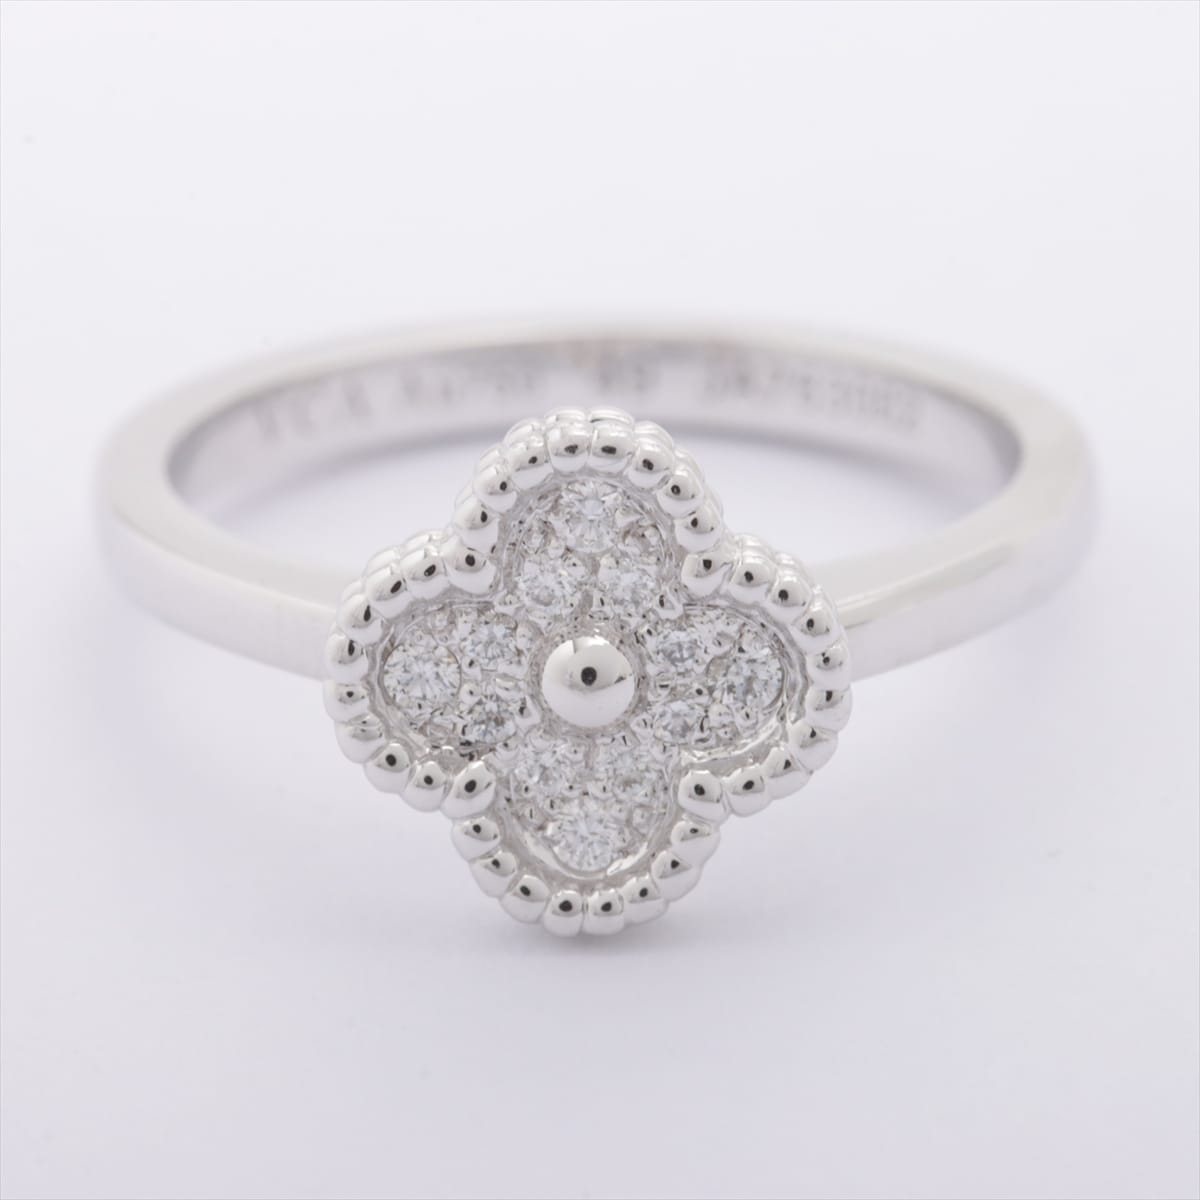 Van Cleef & Arpels Sweet Alhambra diamond rings 750WG 3.3g